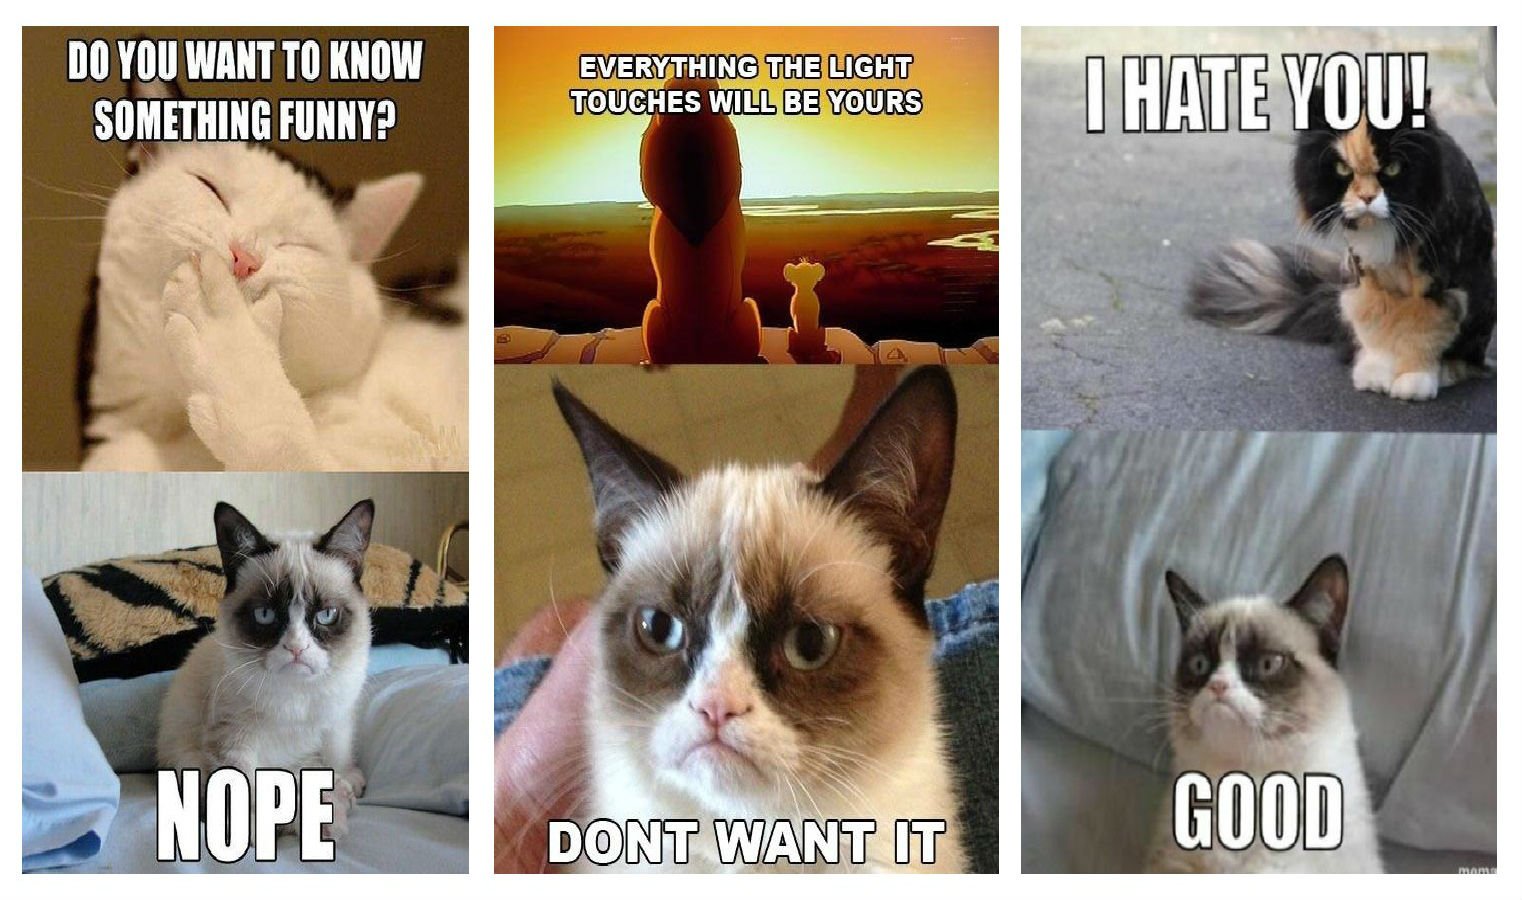 Funny Cat Meme Wallpaper